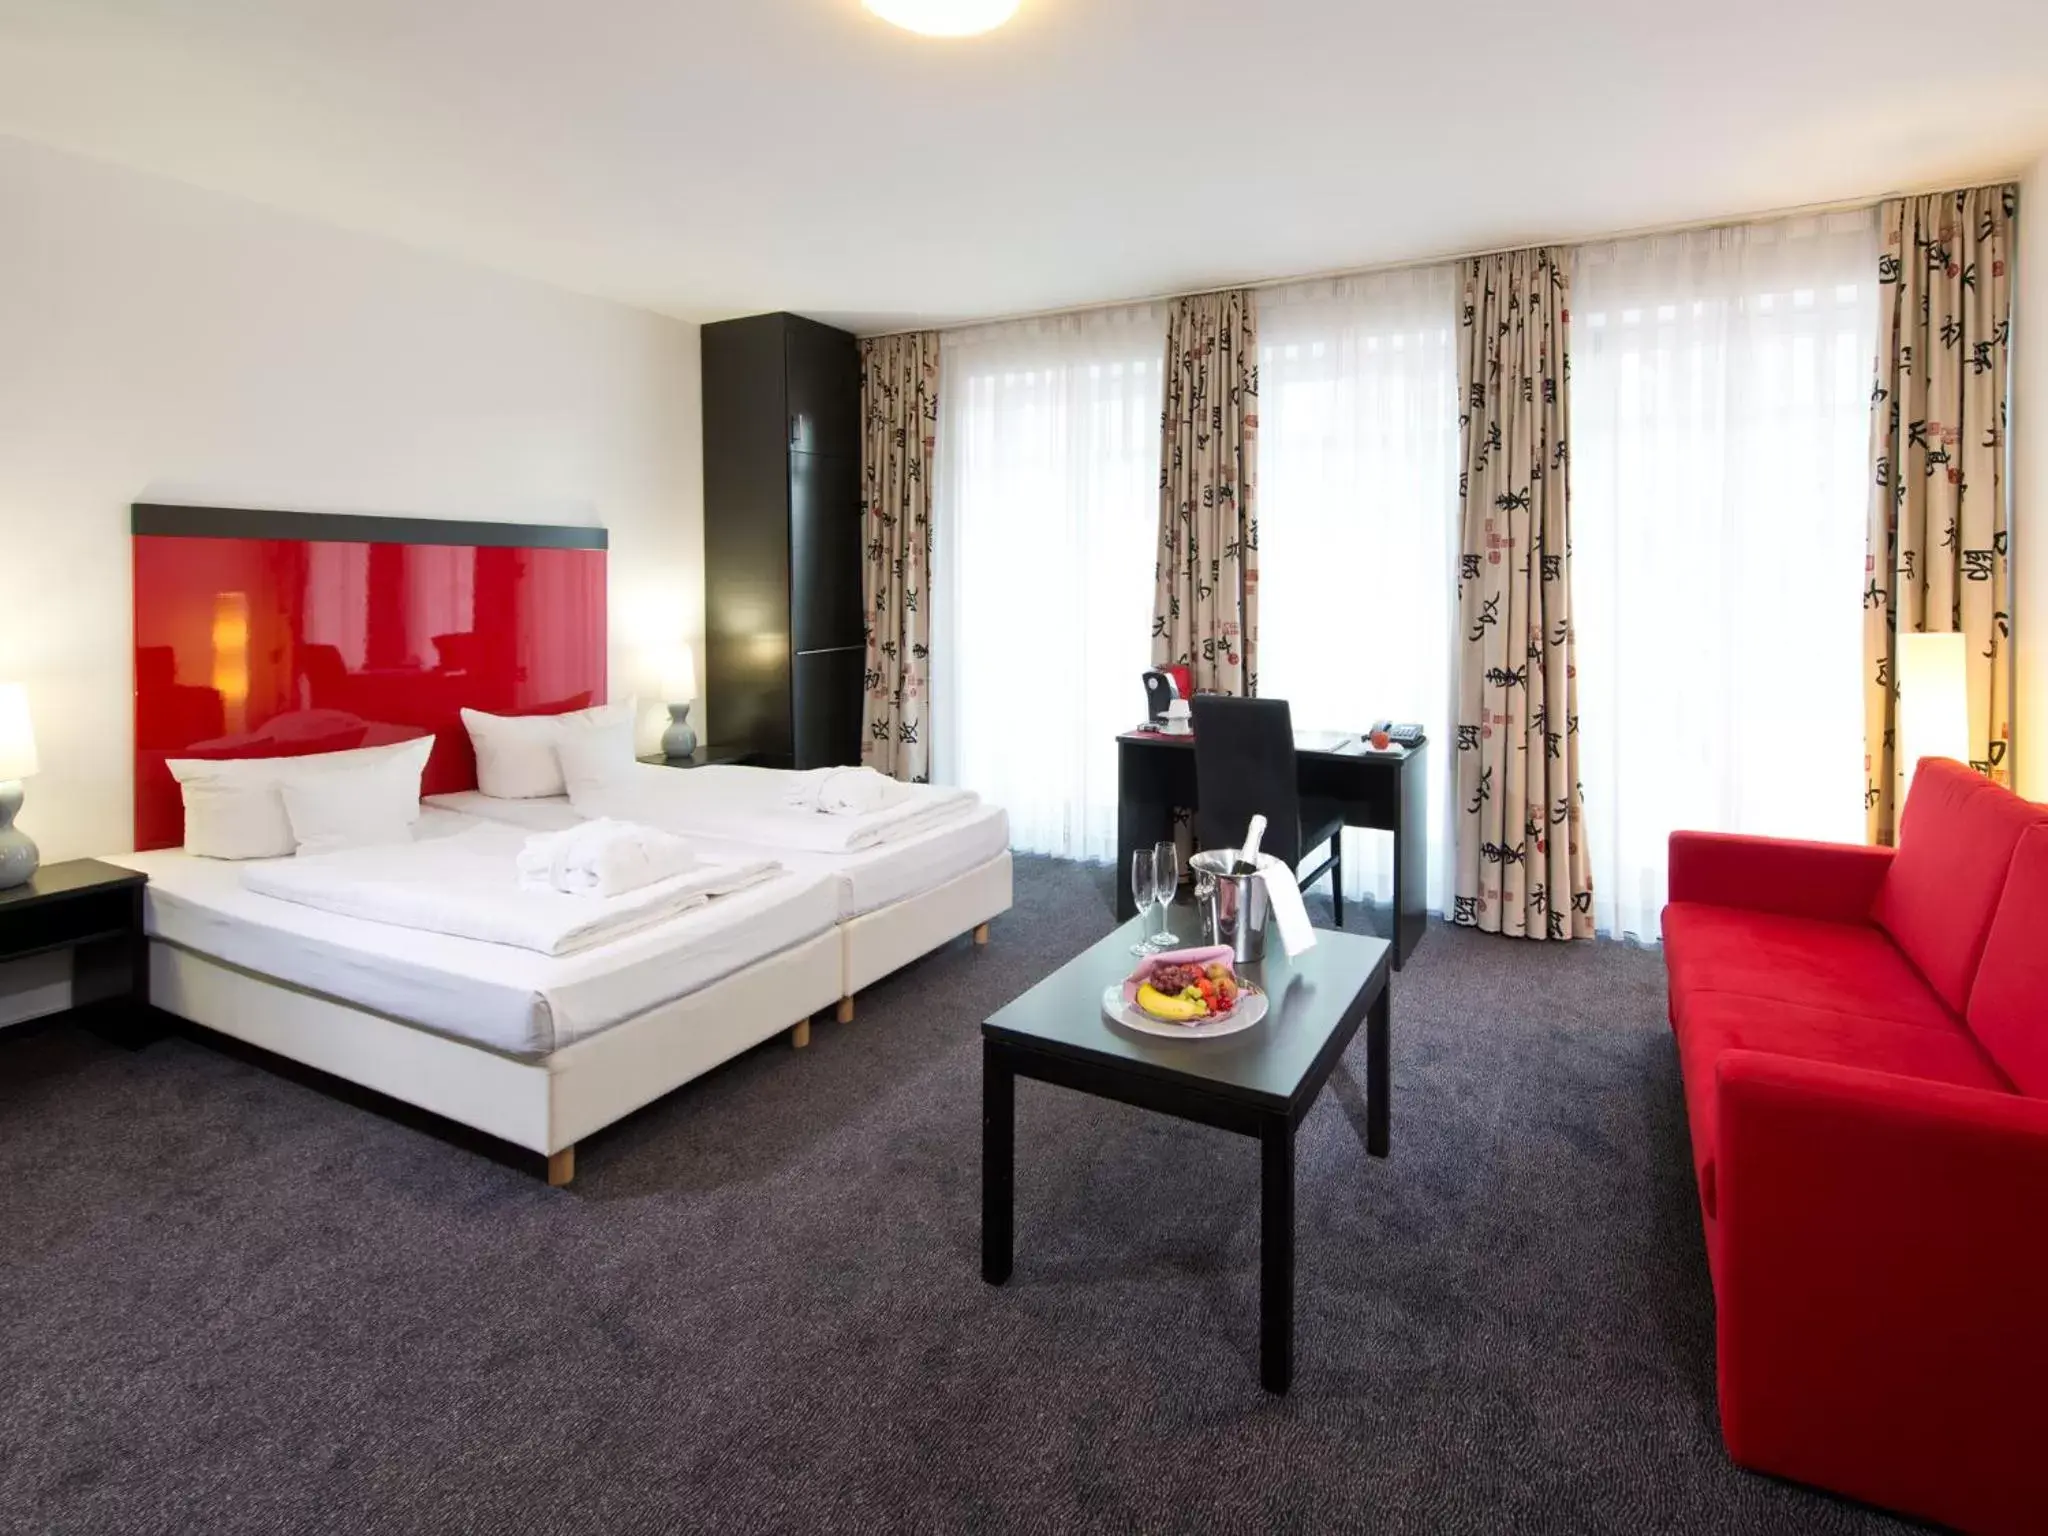 Junior Suite in ACHAT Hotel Buchholz Hamburg